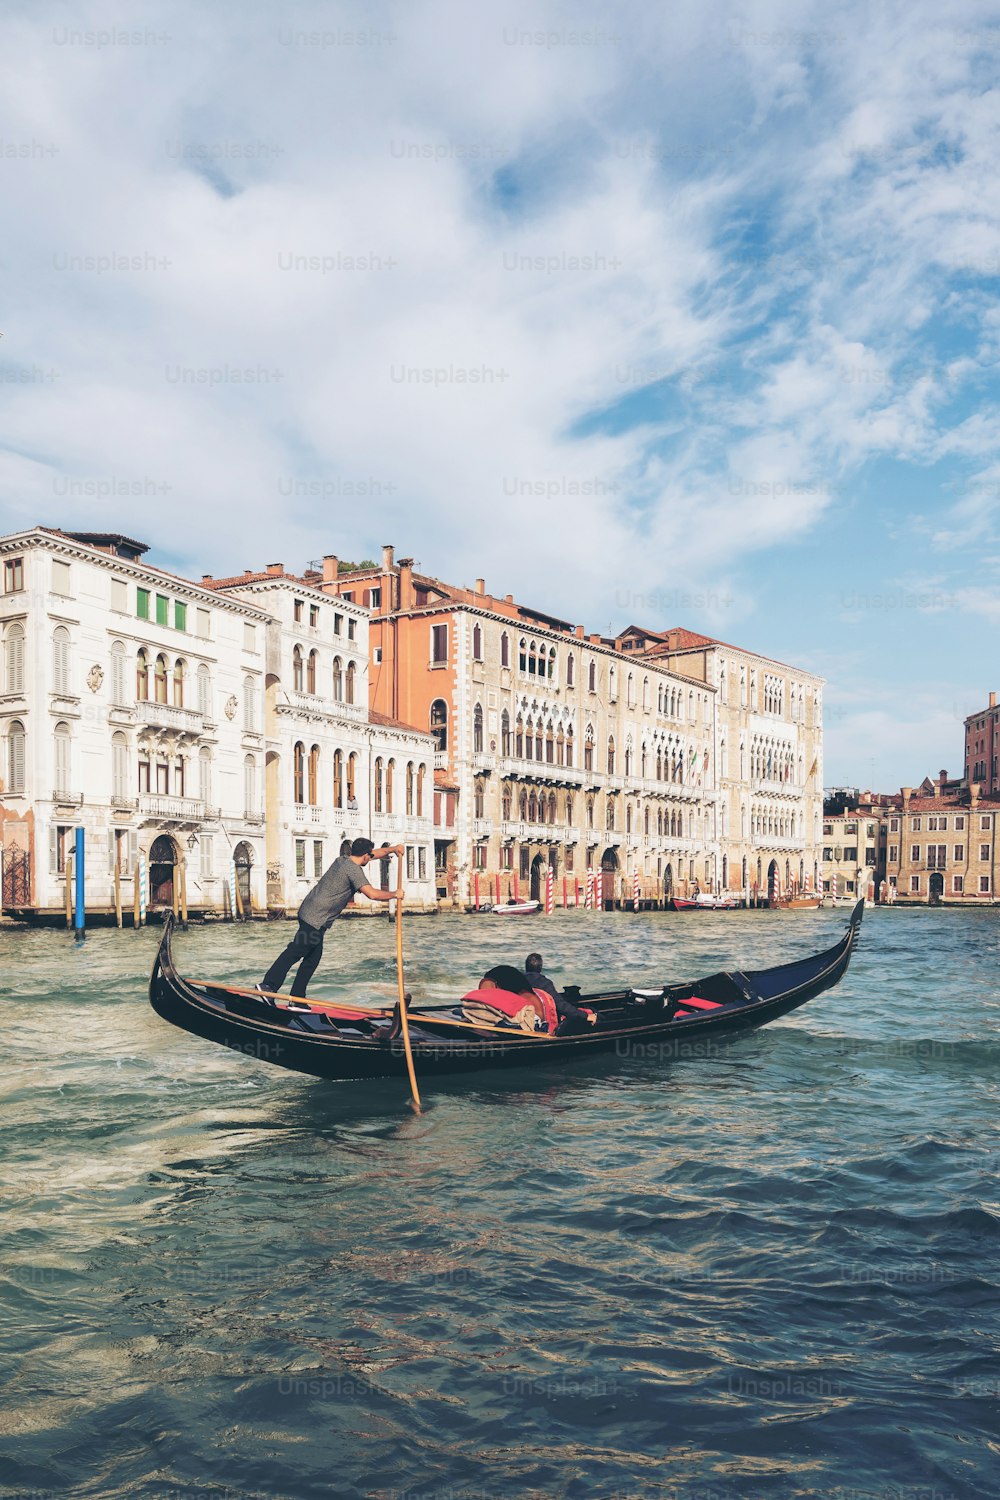 Venezianische Gondoliere Stochergondel durch den Canal Grande von Venedig, Italien. Gondola ist ein traditionelles venezianisches Ruderboot mit flachem Boden. Es ist der einzigartige Transport von Venedig, Italien.